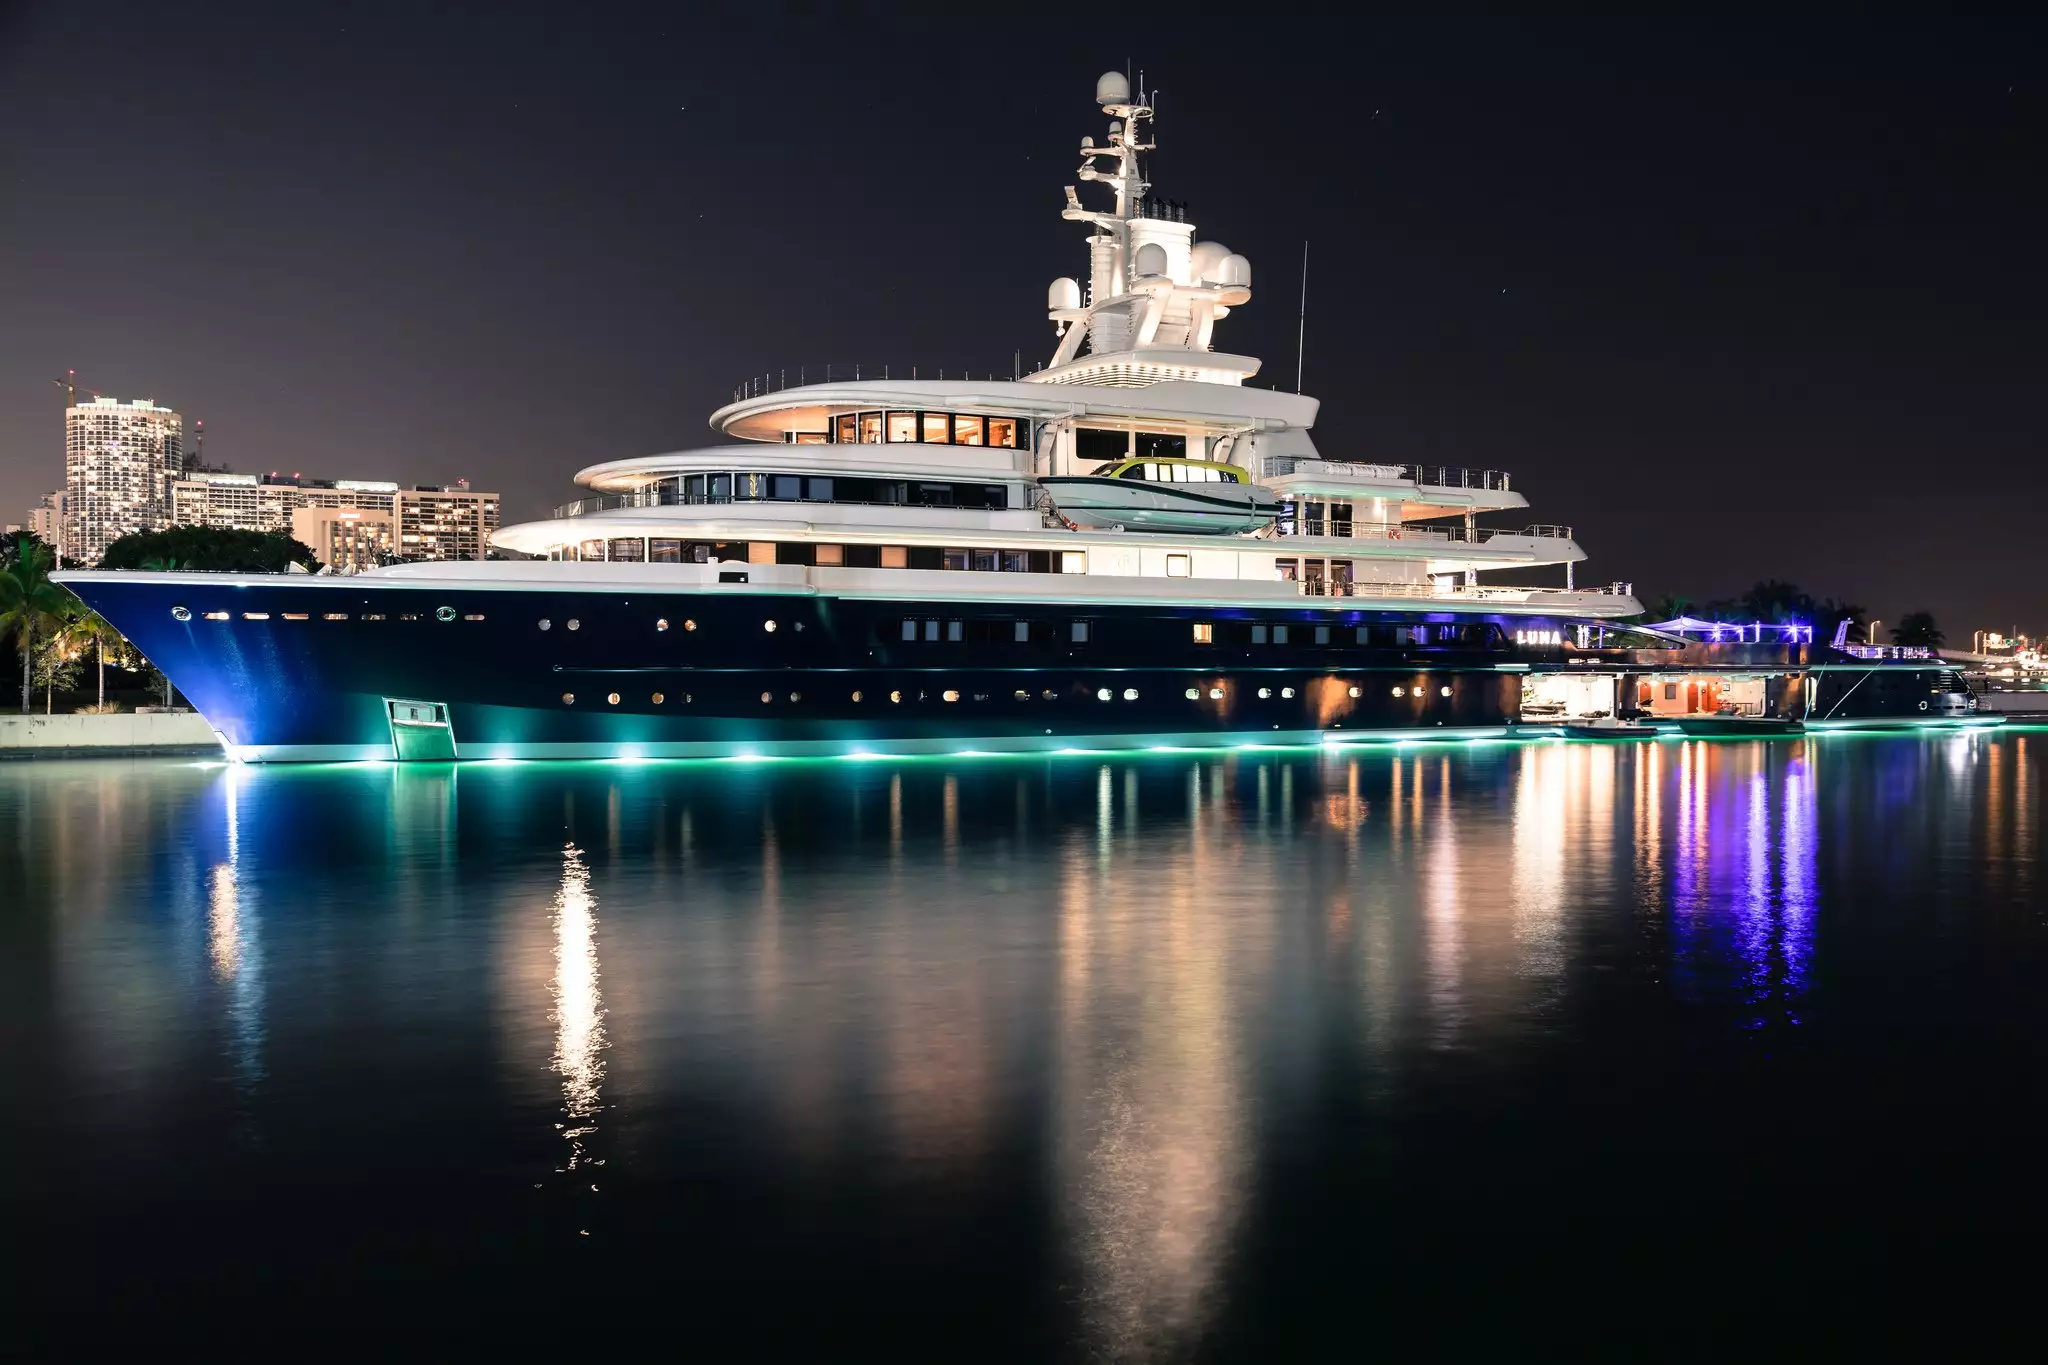 Luna yacht – 115m – Lloyd Werft - Farkhad Akhmedov